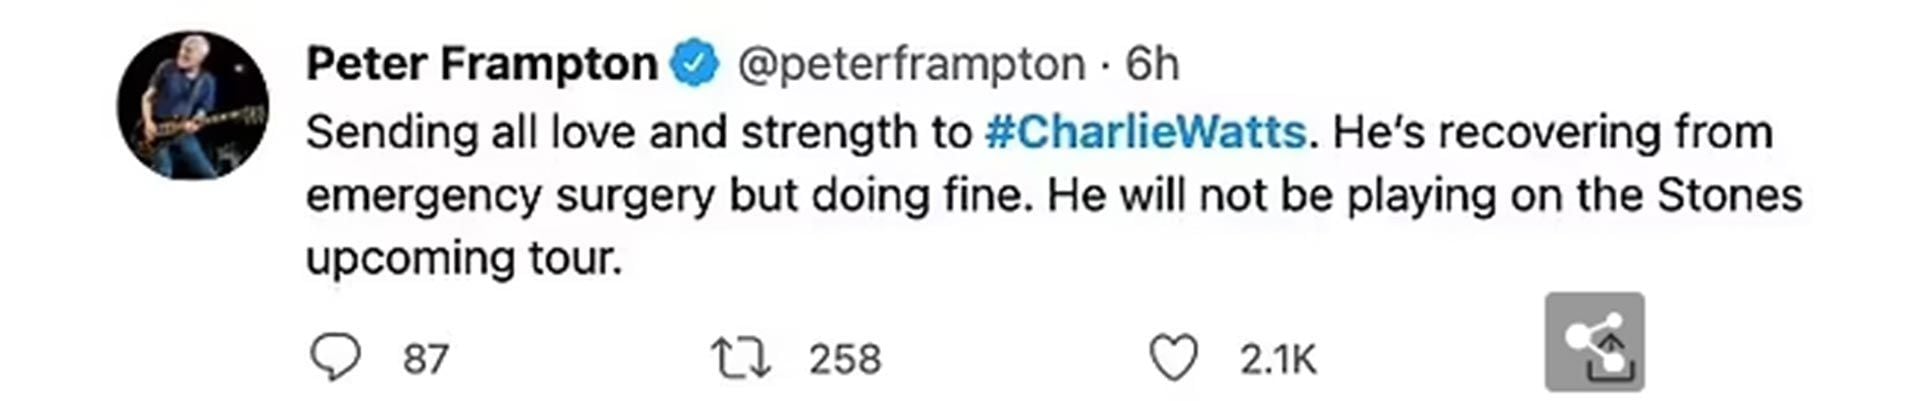 El twitt de Peter Frampton